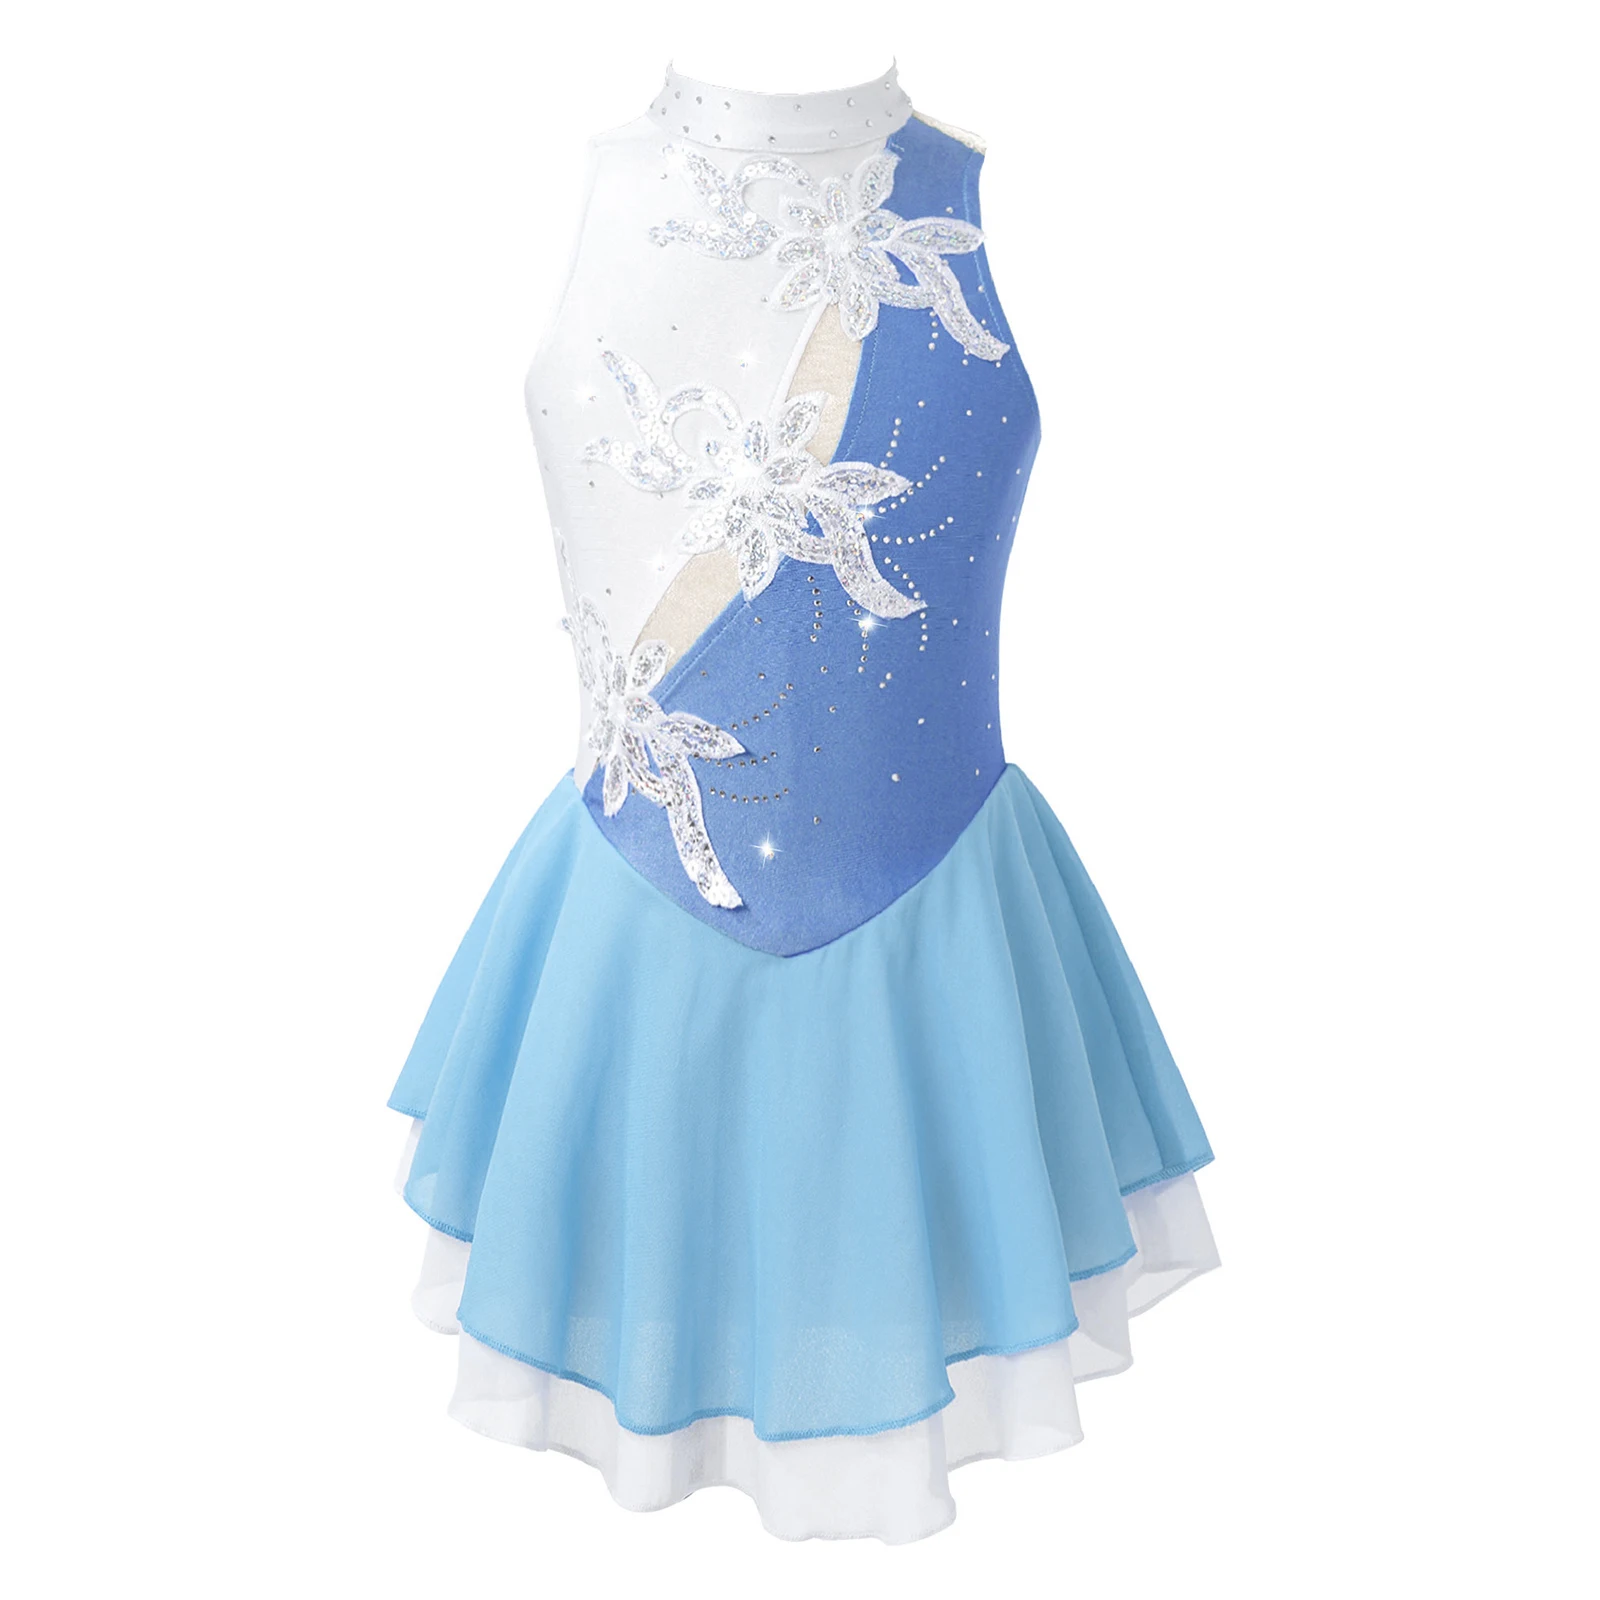 

Детское балетное танцевальное платье для девочек, блестящее цветочное украшение без рукавов и с блестками, гимнастическое трико с вырезами на спине, танцевальное платье для фигурного катания на коньках